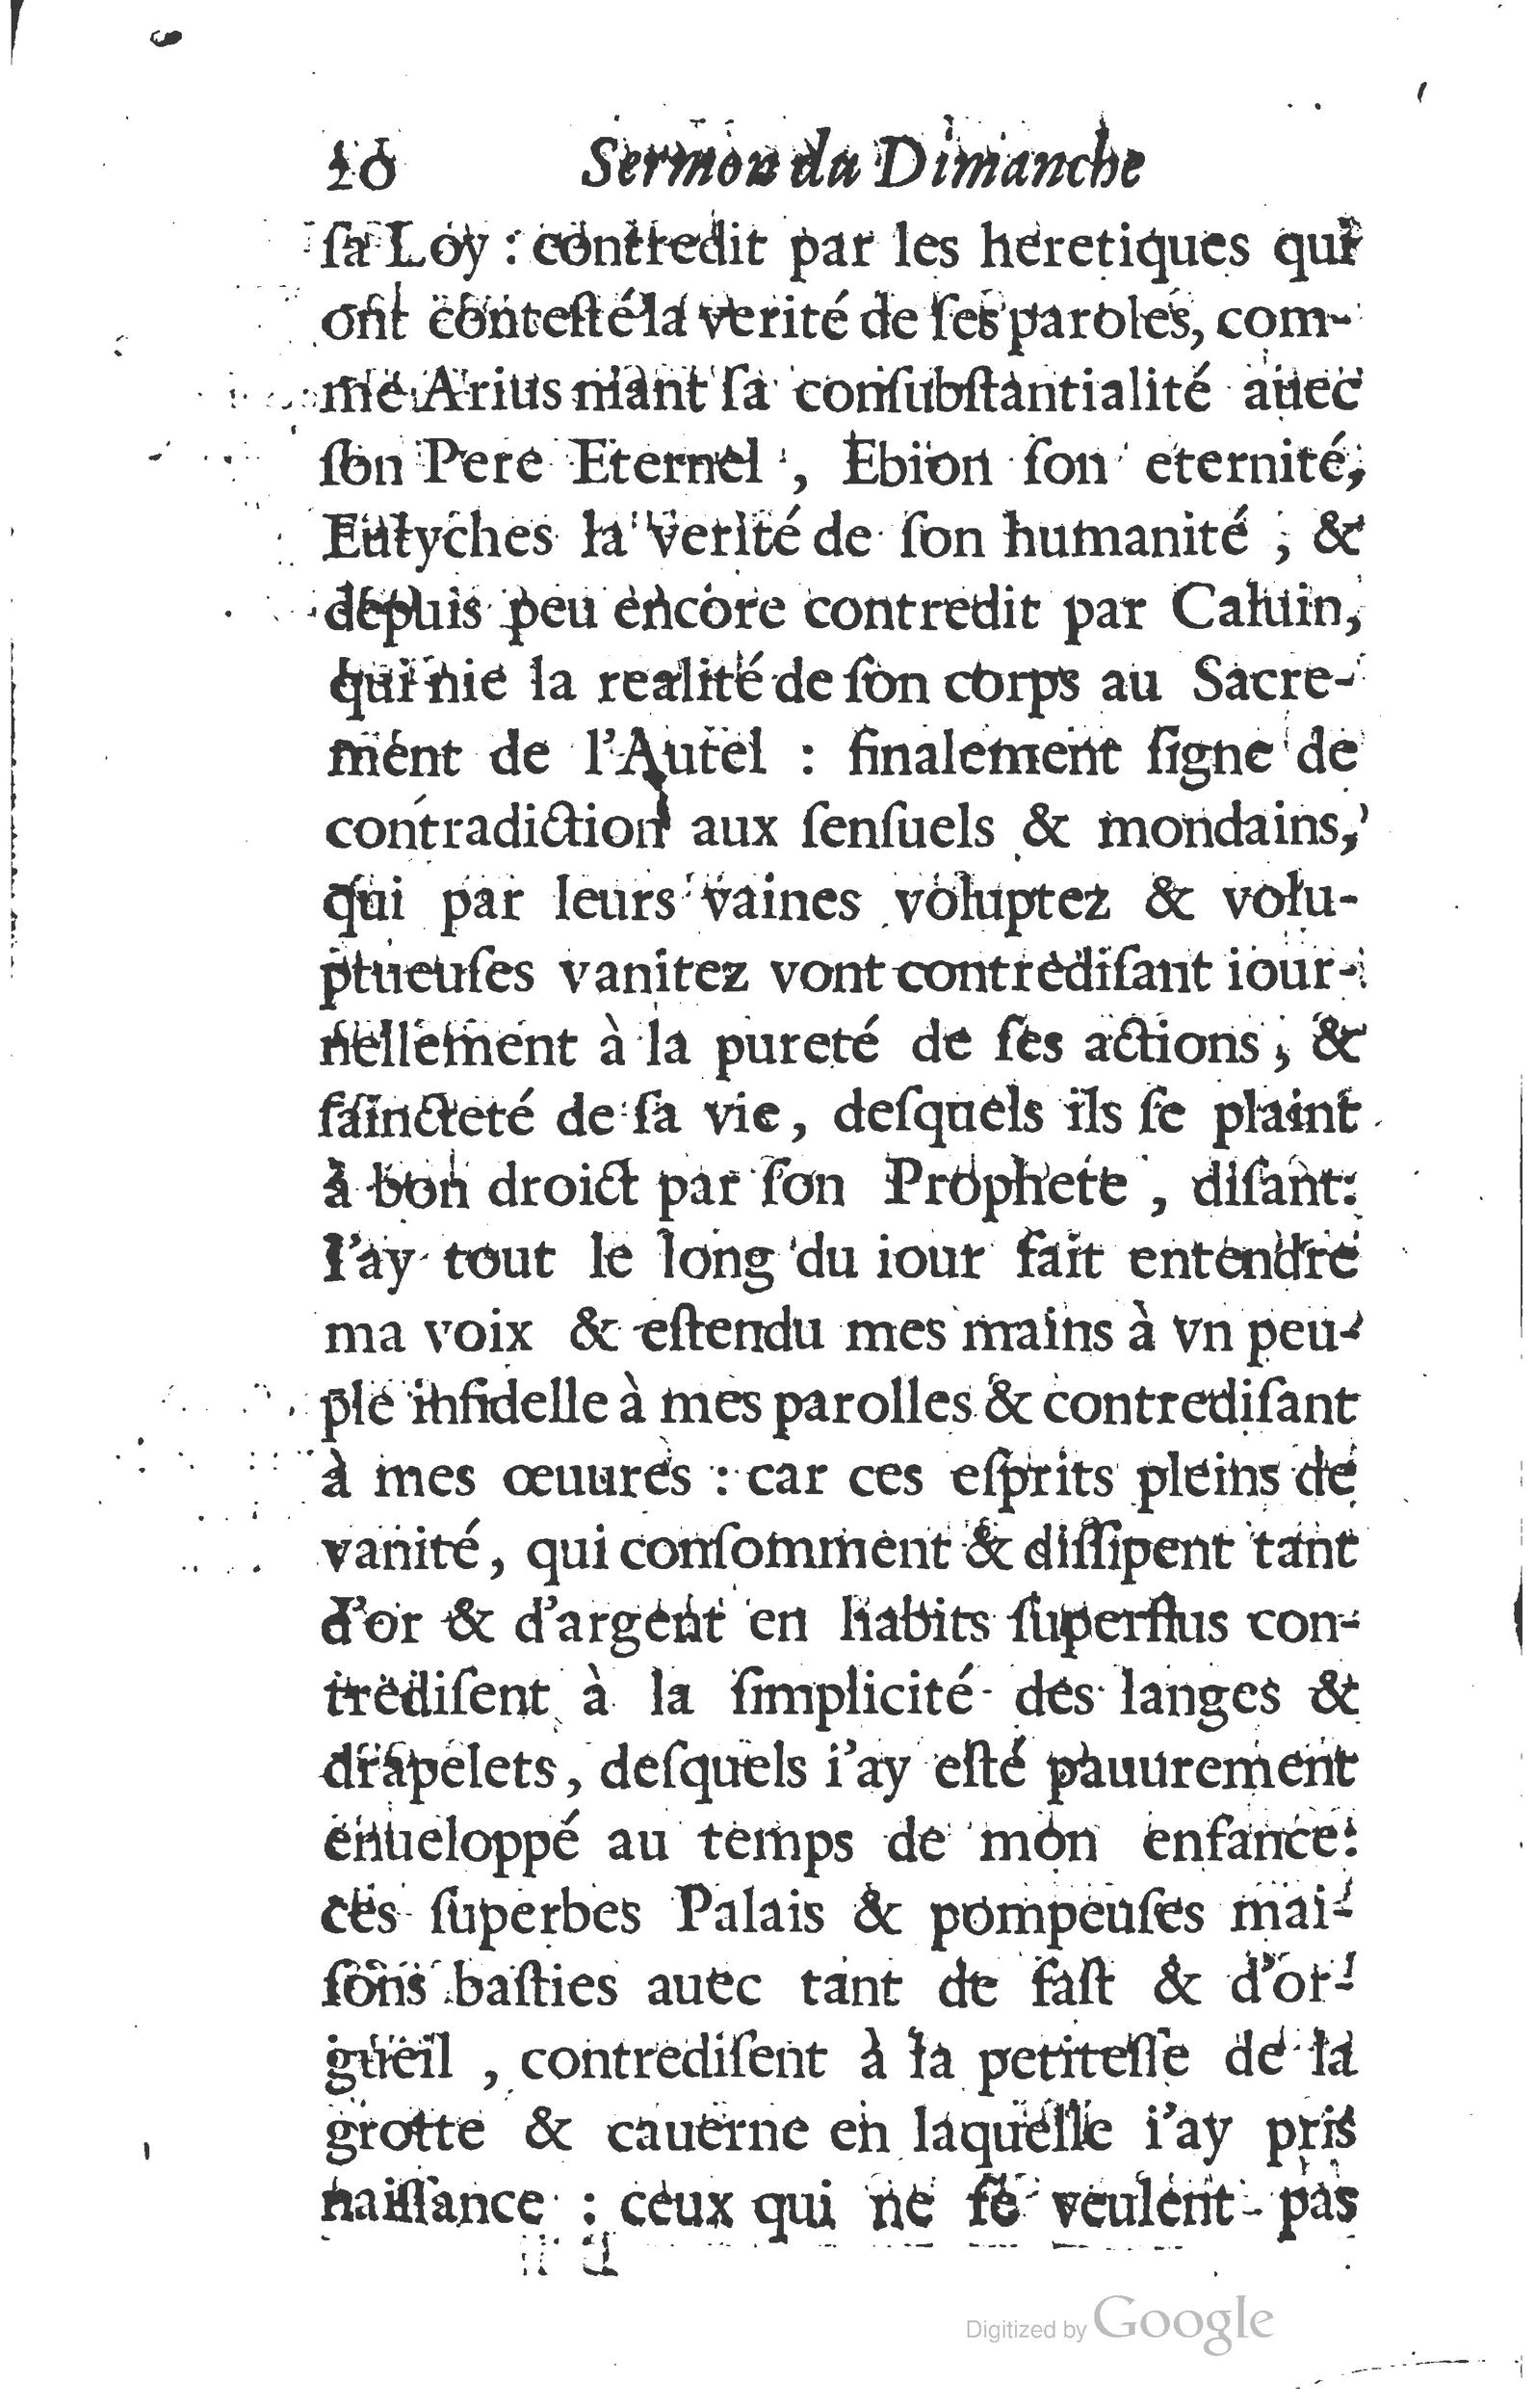 1629 Sermons ou trésor de la piété chrétienne_Page_043.jpg